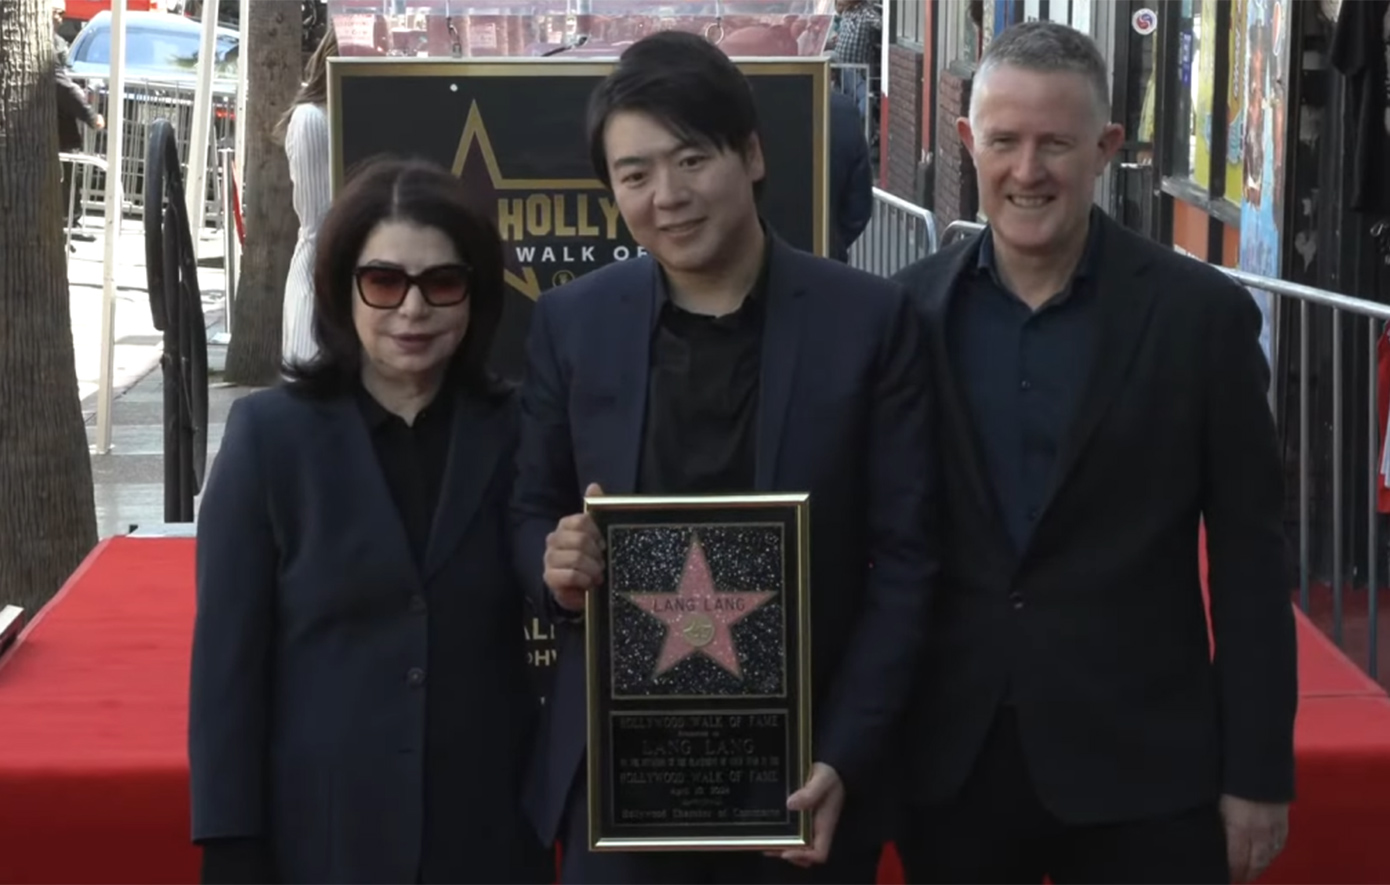 Ο πιανίστας Λανγκ Λανγκ απέκτησε αστέρι στη Λεωφόρο της Δόξας στο Χόλιγουντ